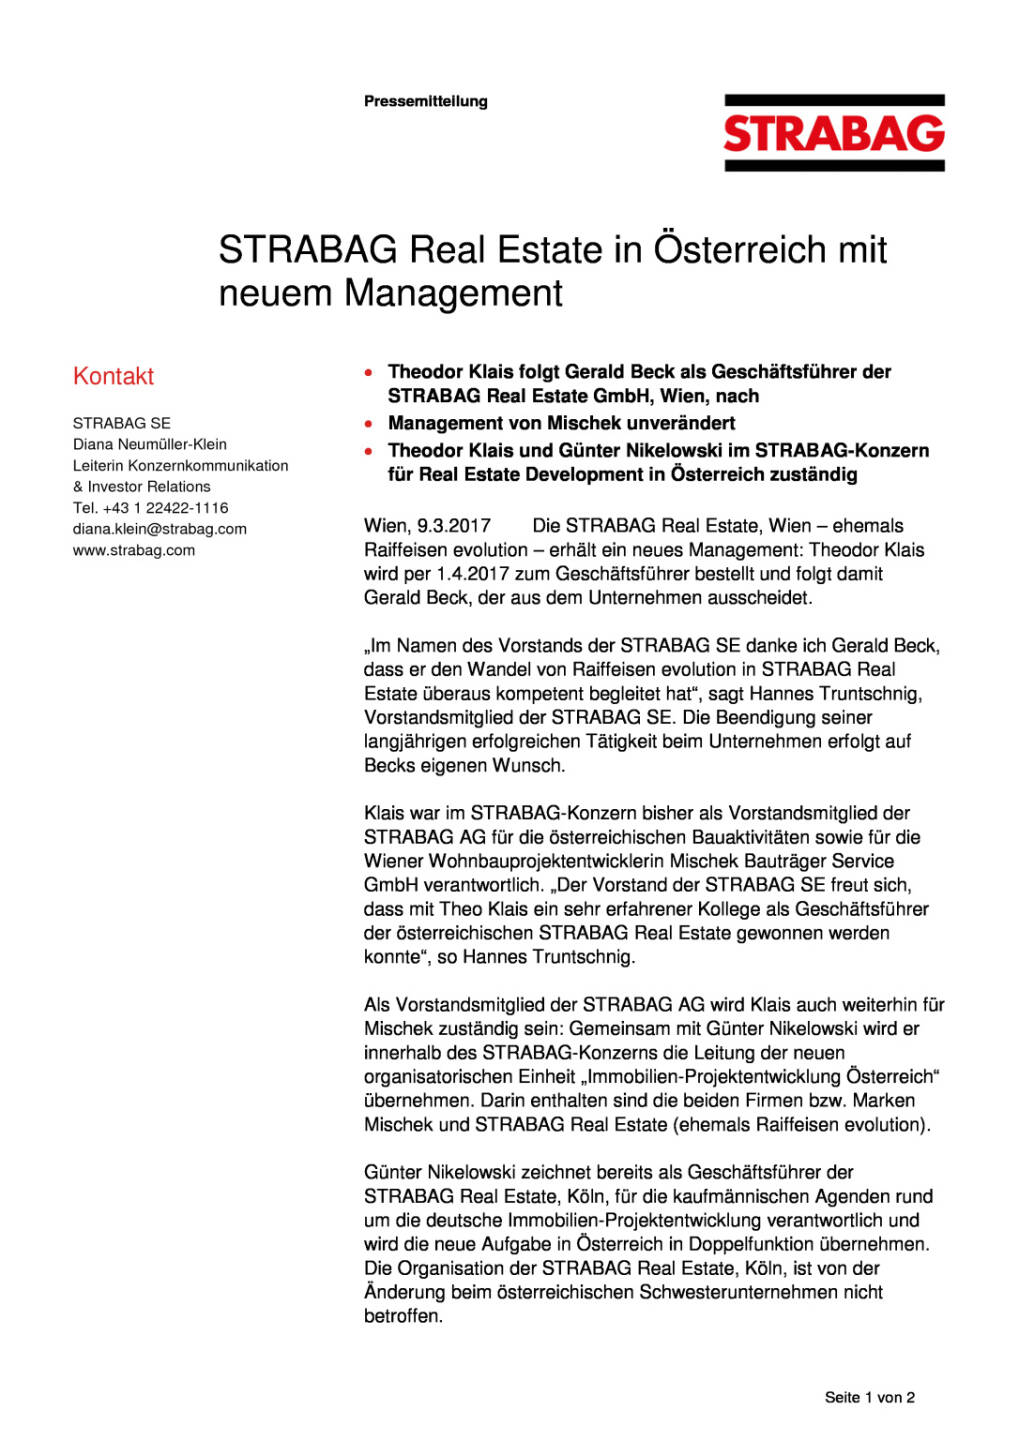 Strabag Real Estate in Österreich mit neuem Management, Seite 1/2, komplettes Dokument unter http://boerse-social.com/static/uploads/file_2155_strabag_real_estate_in_osterreich_mit_neuem_management.pdf